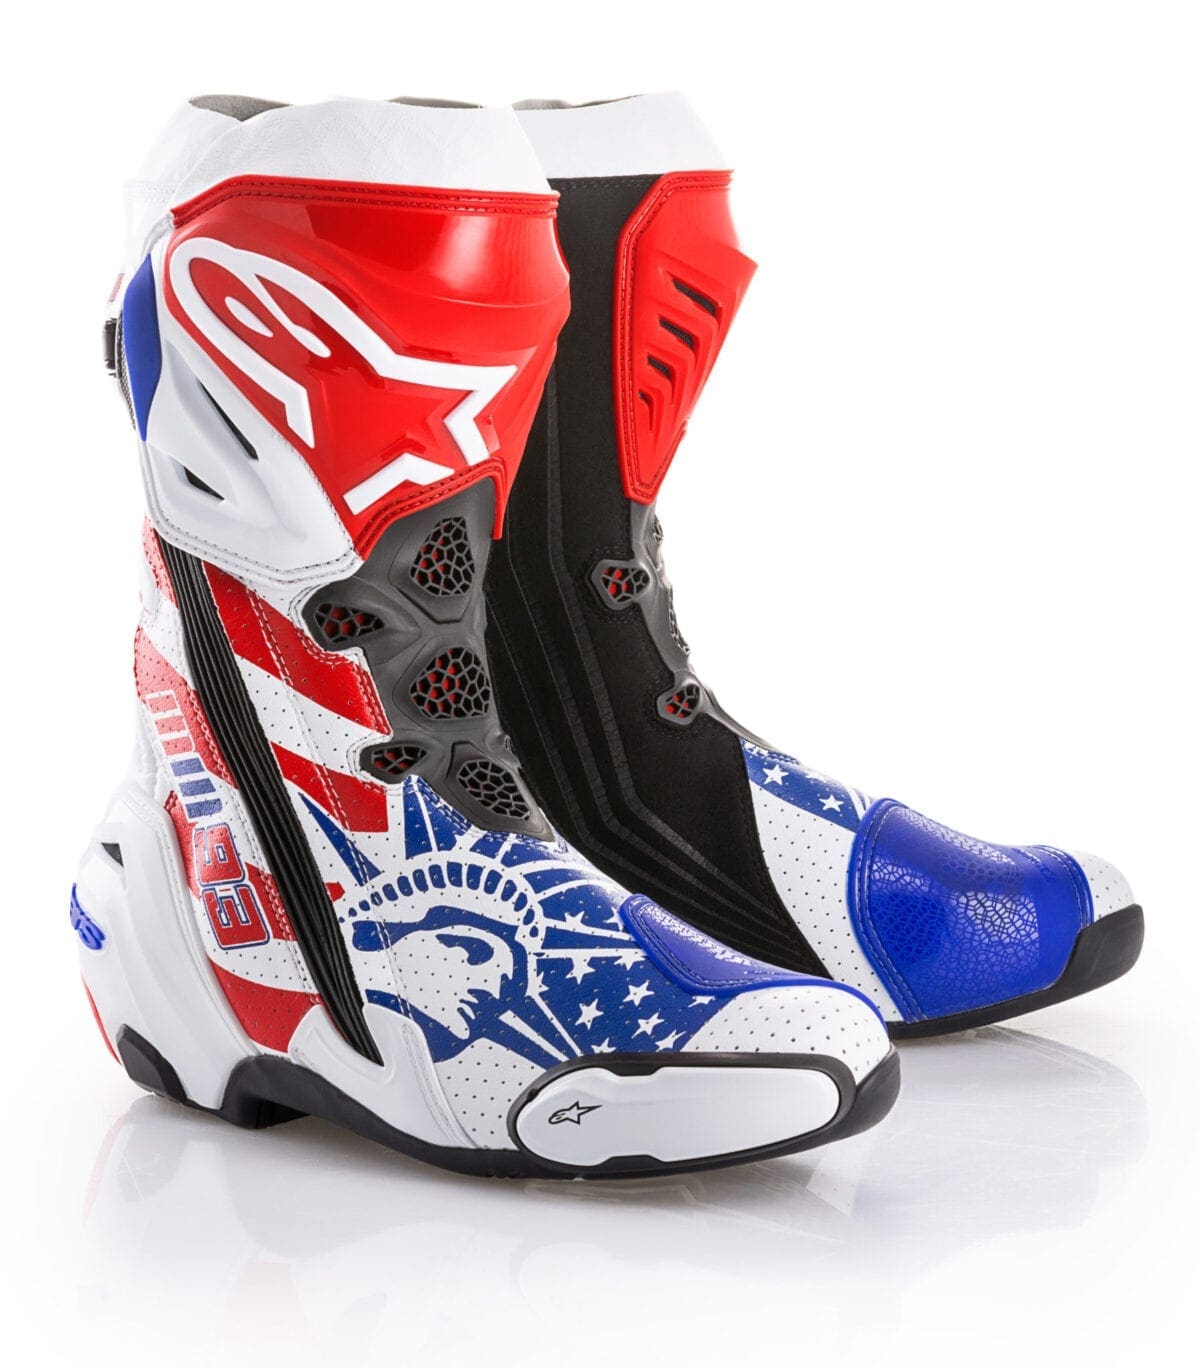 Alpinestars releases limited edition ‘Republik’ Supertech R Marc Marquez Austin MotoGP replica boot